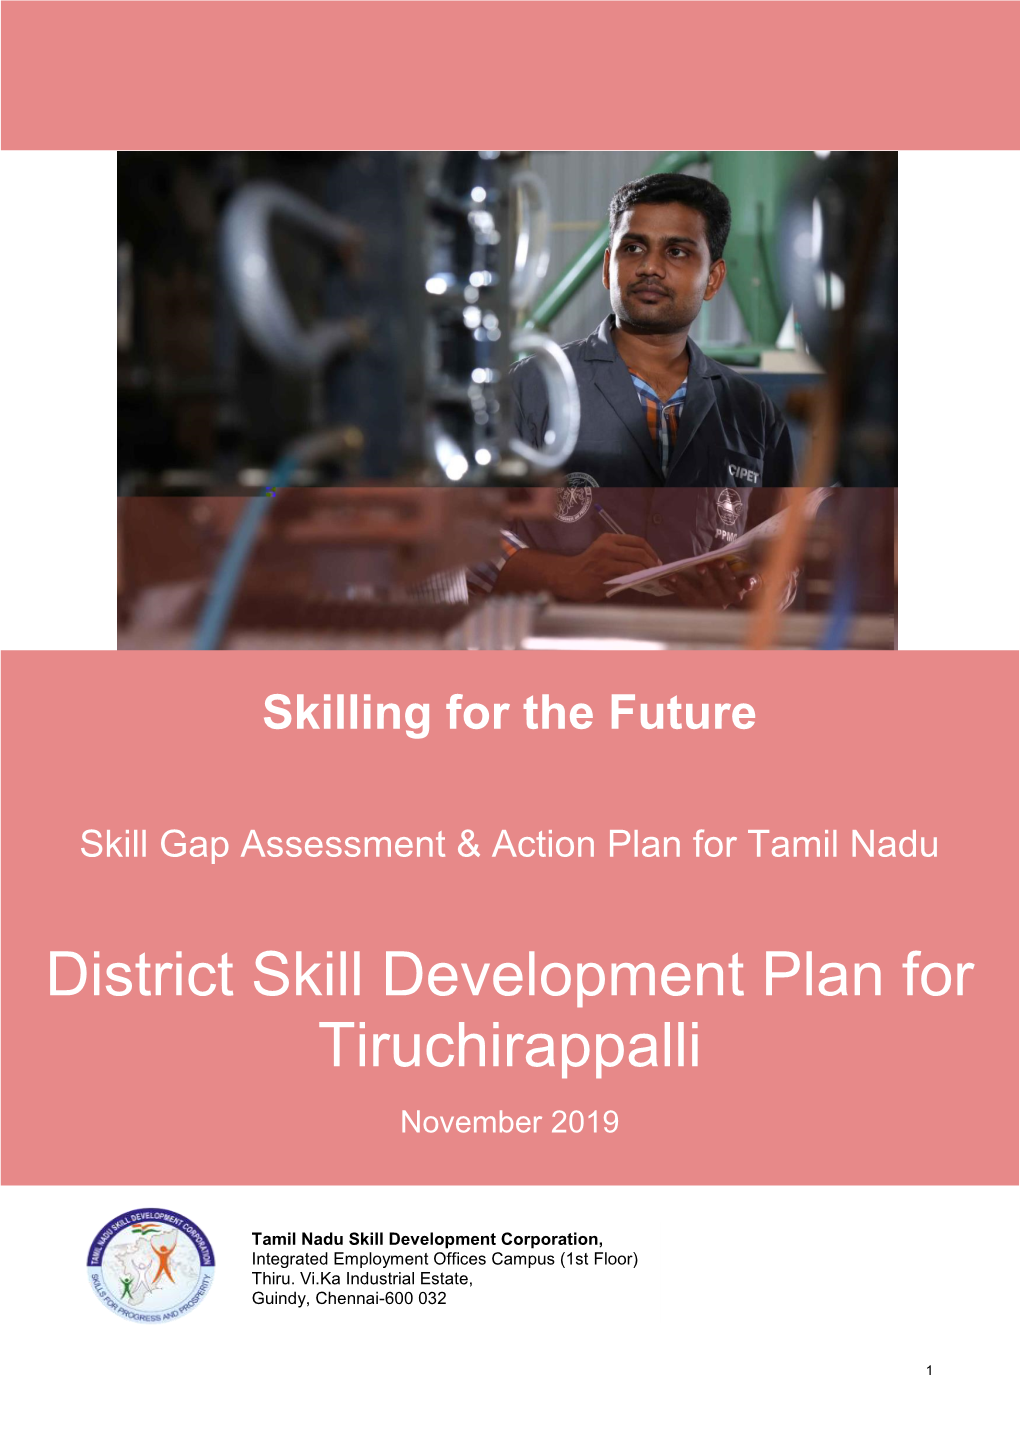 District Skill Development Plan for Tiruchirappalli November 2019